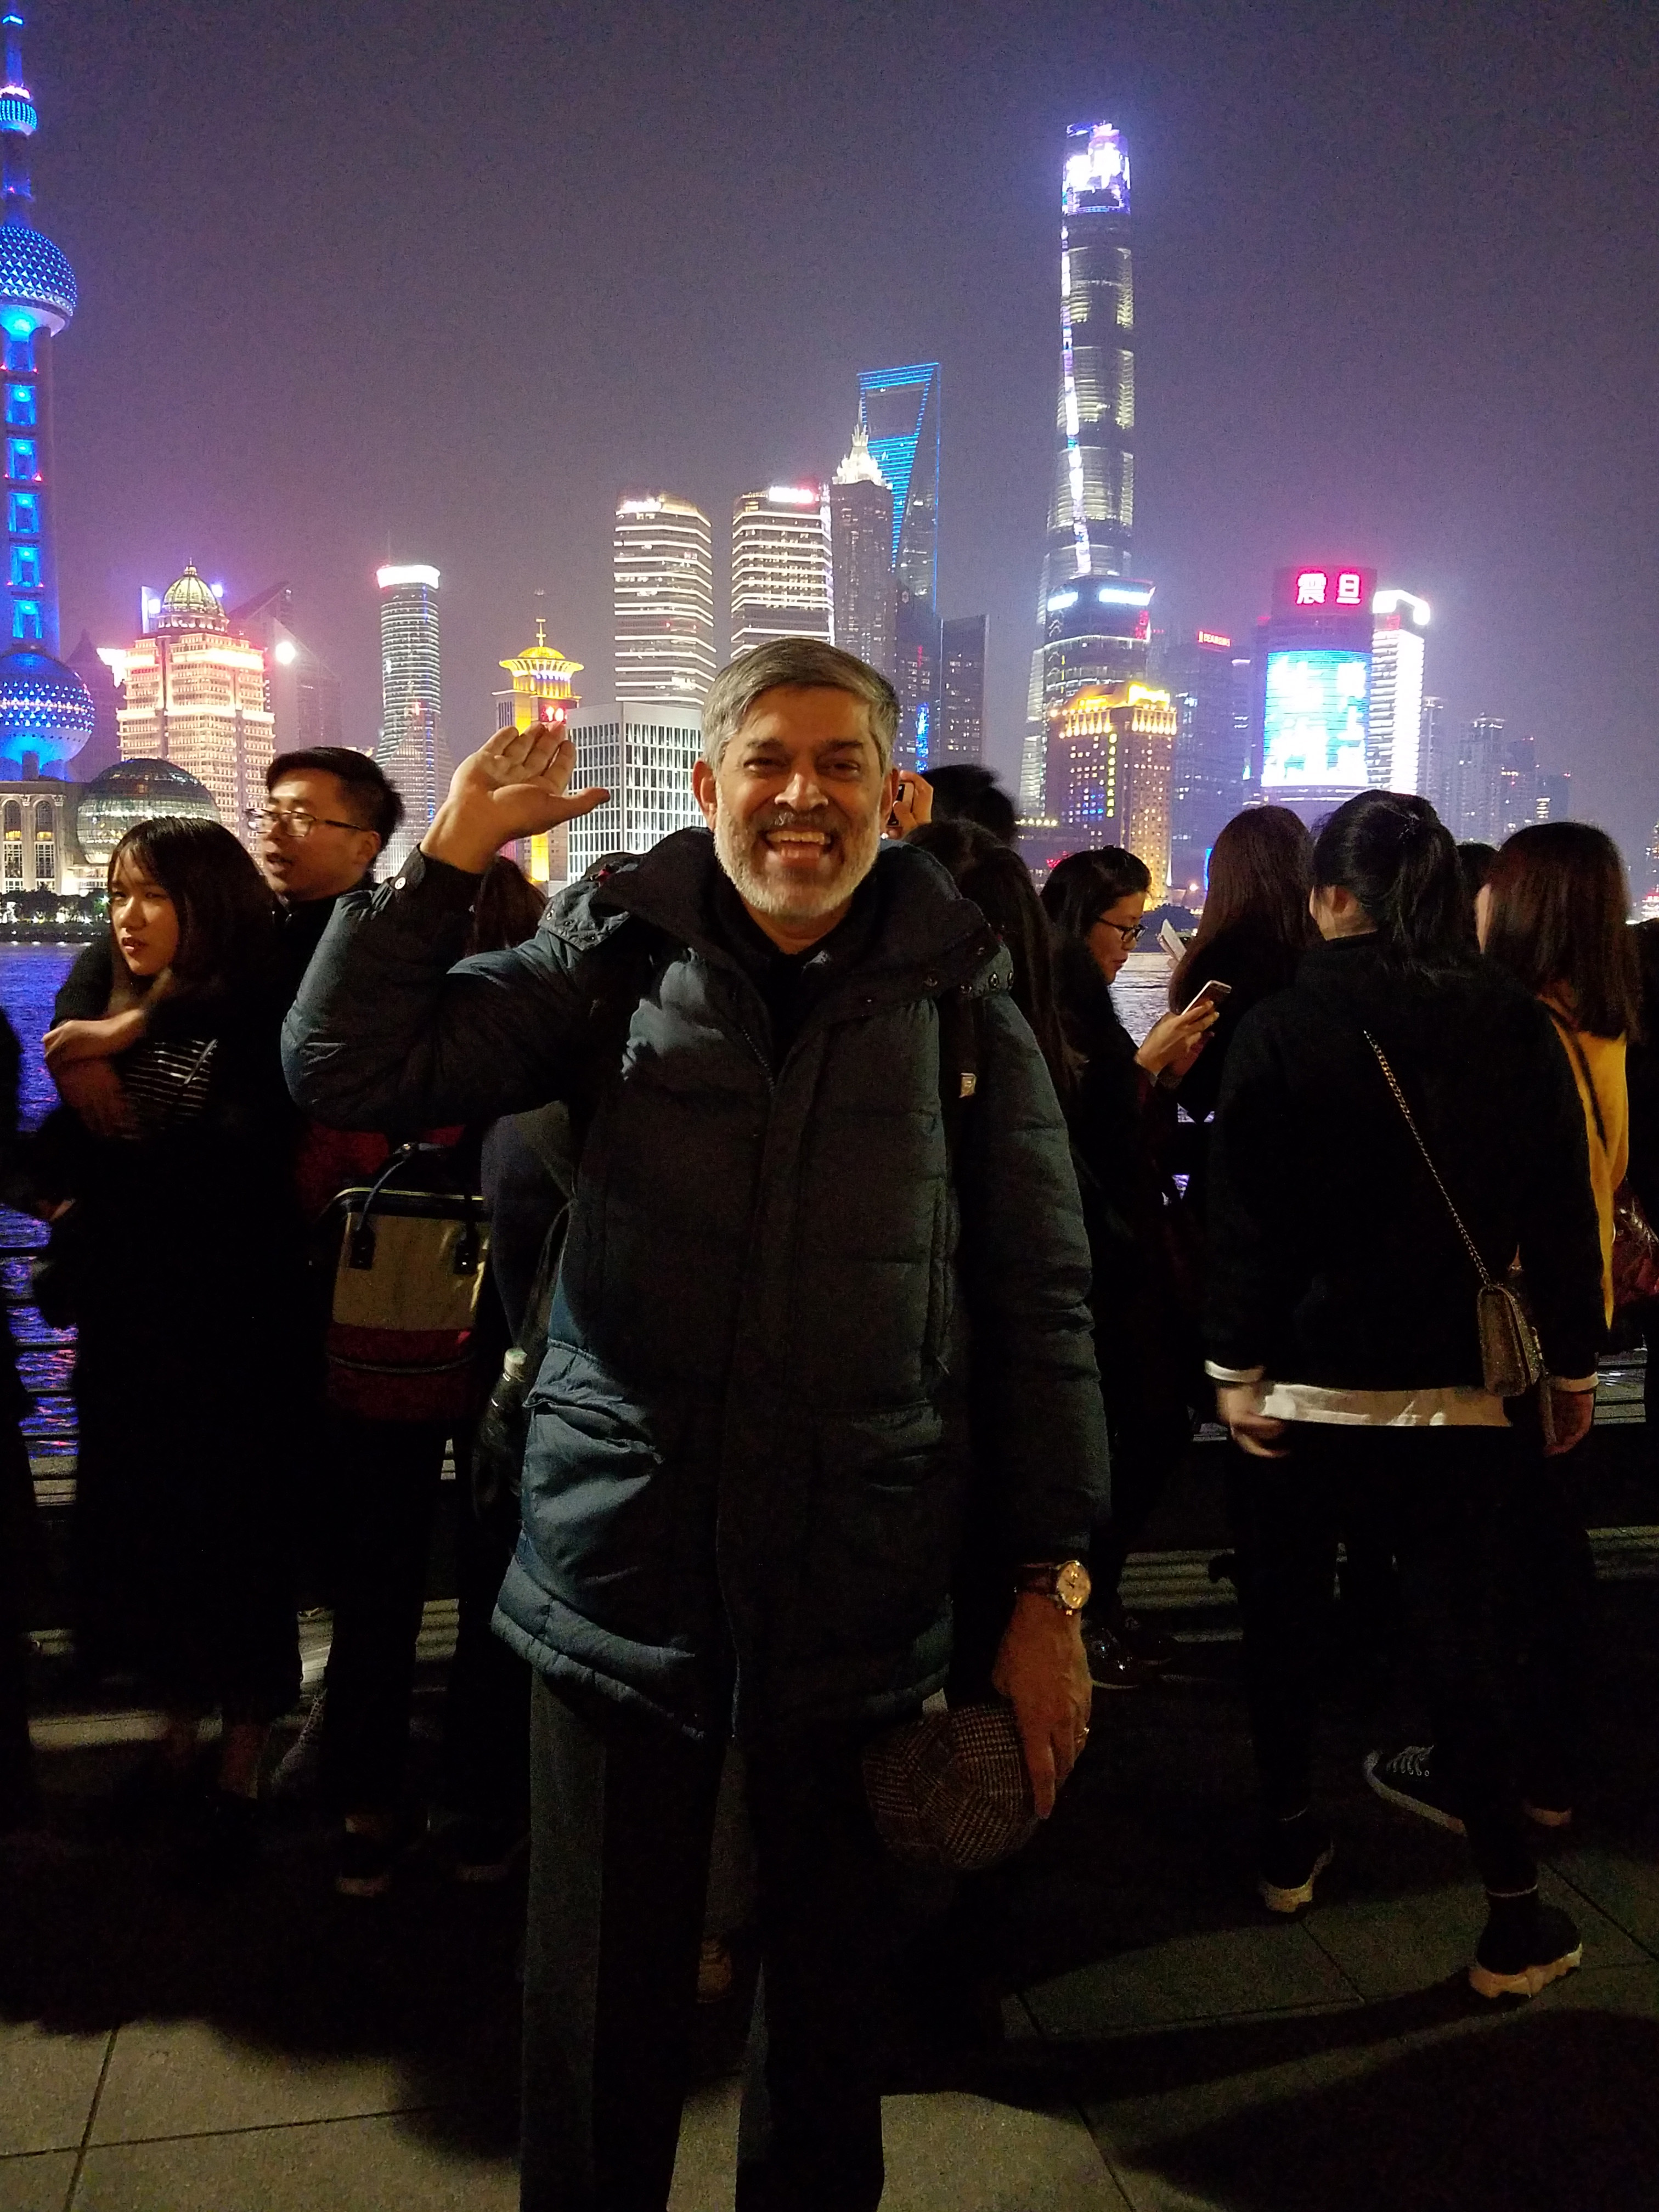 MVK at the Bund in Shanghai 2018